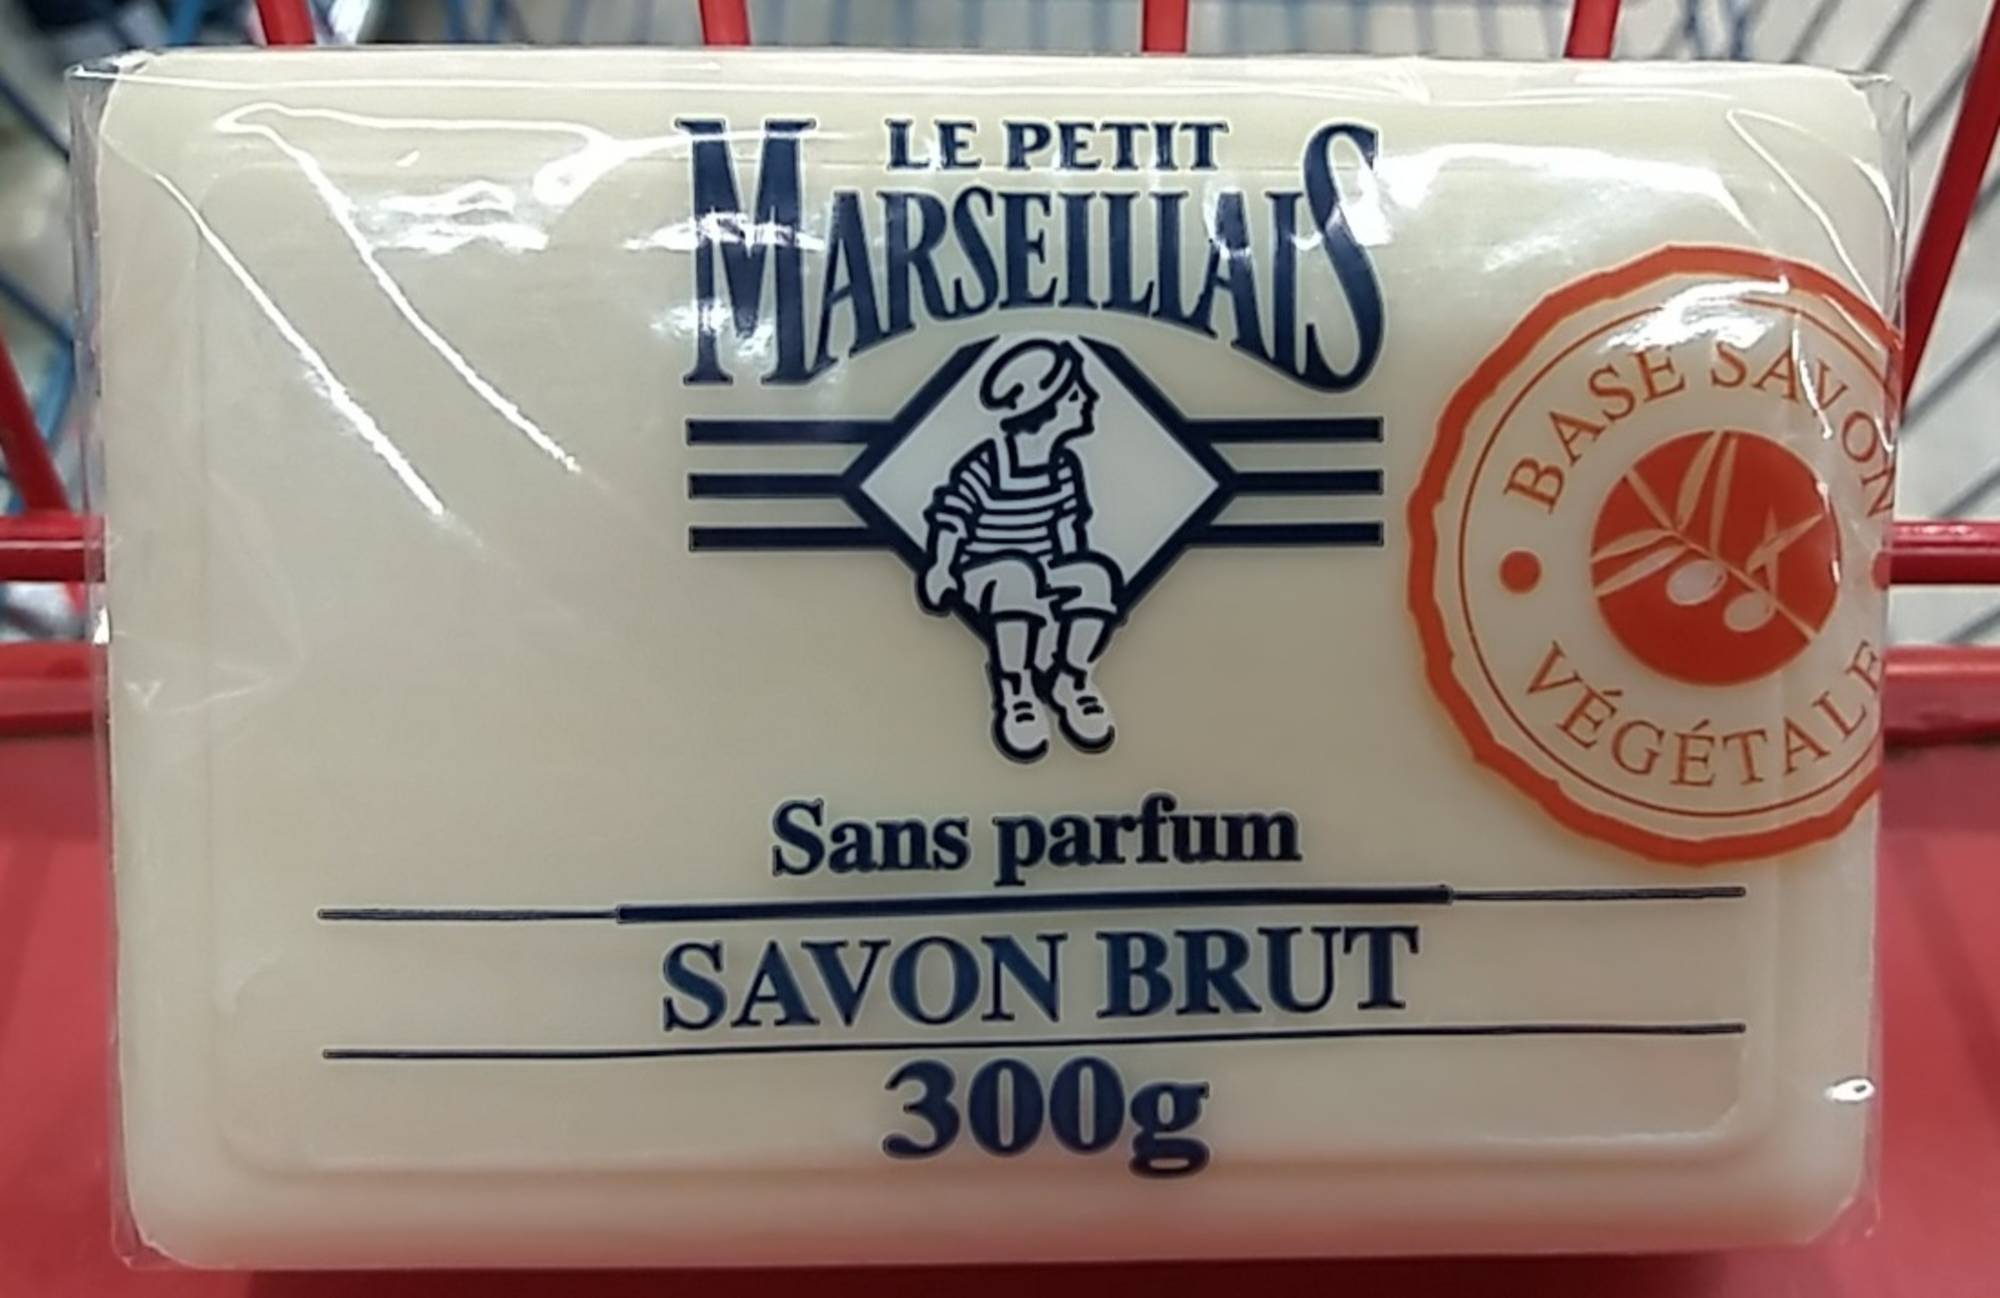 LE PETIT MARSEILLAIS - Savon brut sans parfum